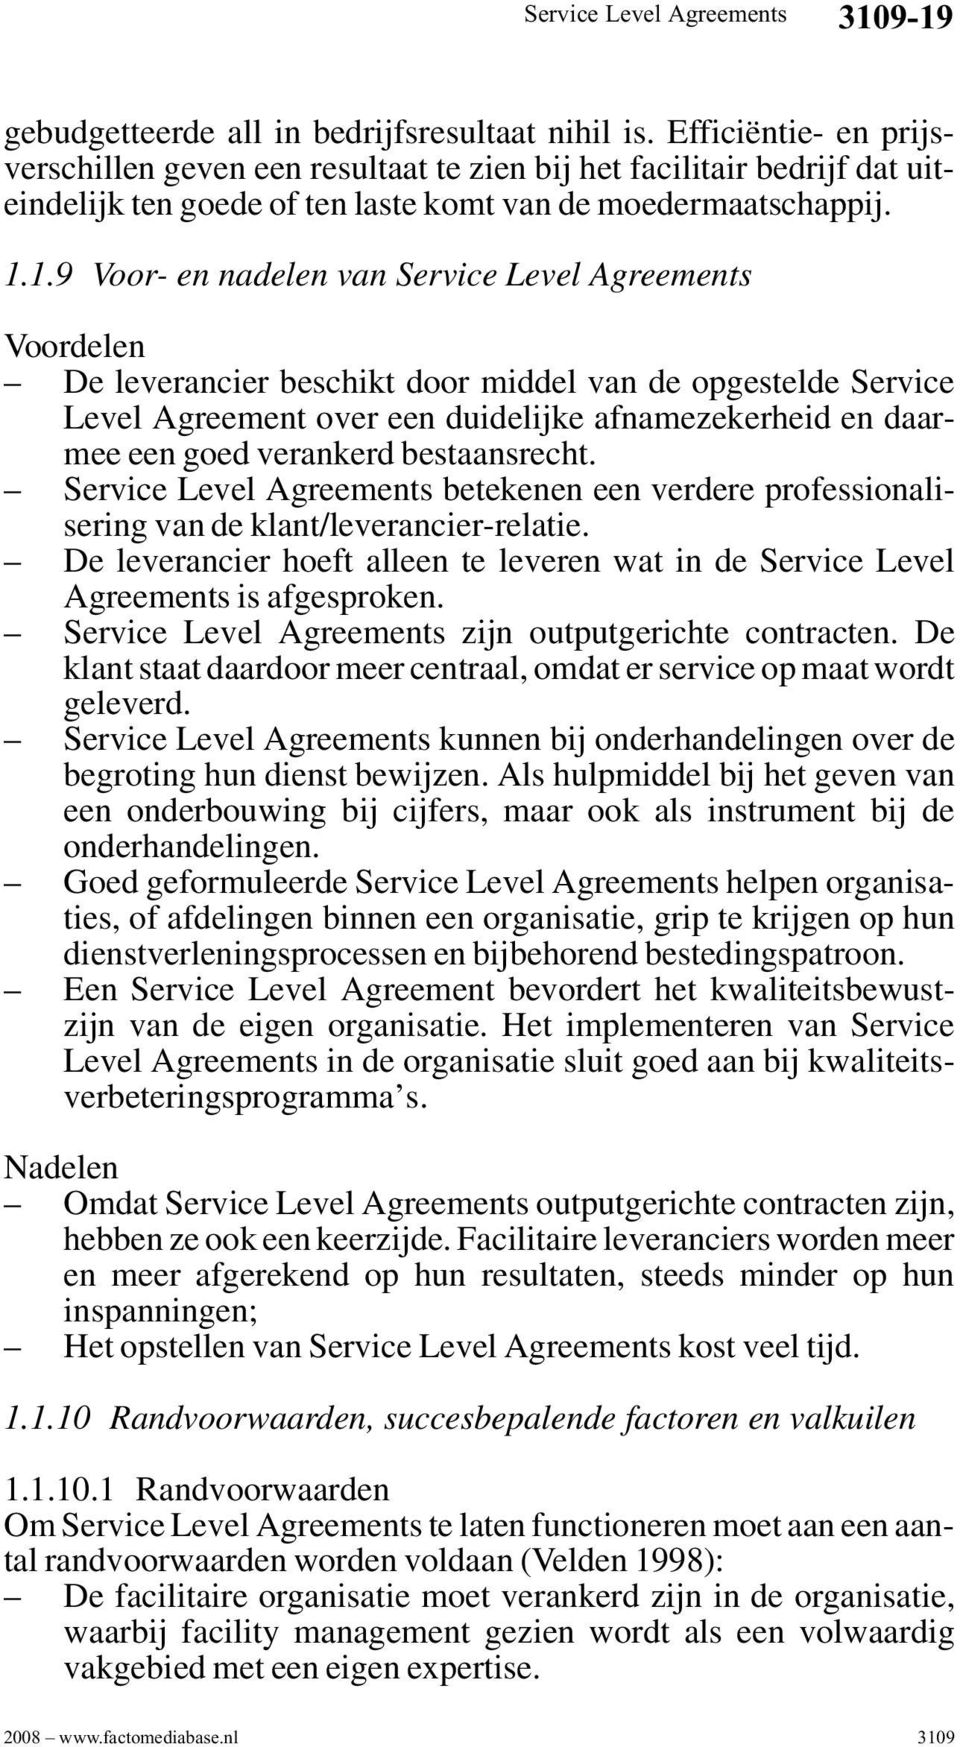 1.9 Voor- en nadelen van Voordelen De leverancier beschikt door middel van de opgestelde Service Level Agreement over een duidelijke afnamezekerheid en daarmee een goed verankerd bestaansrecht.